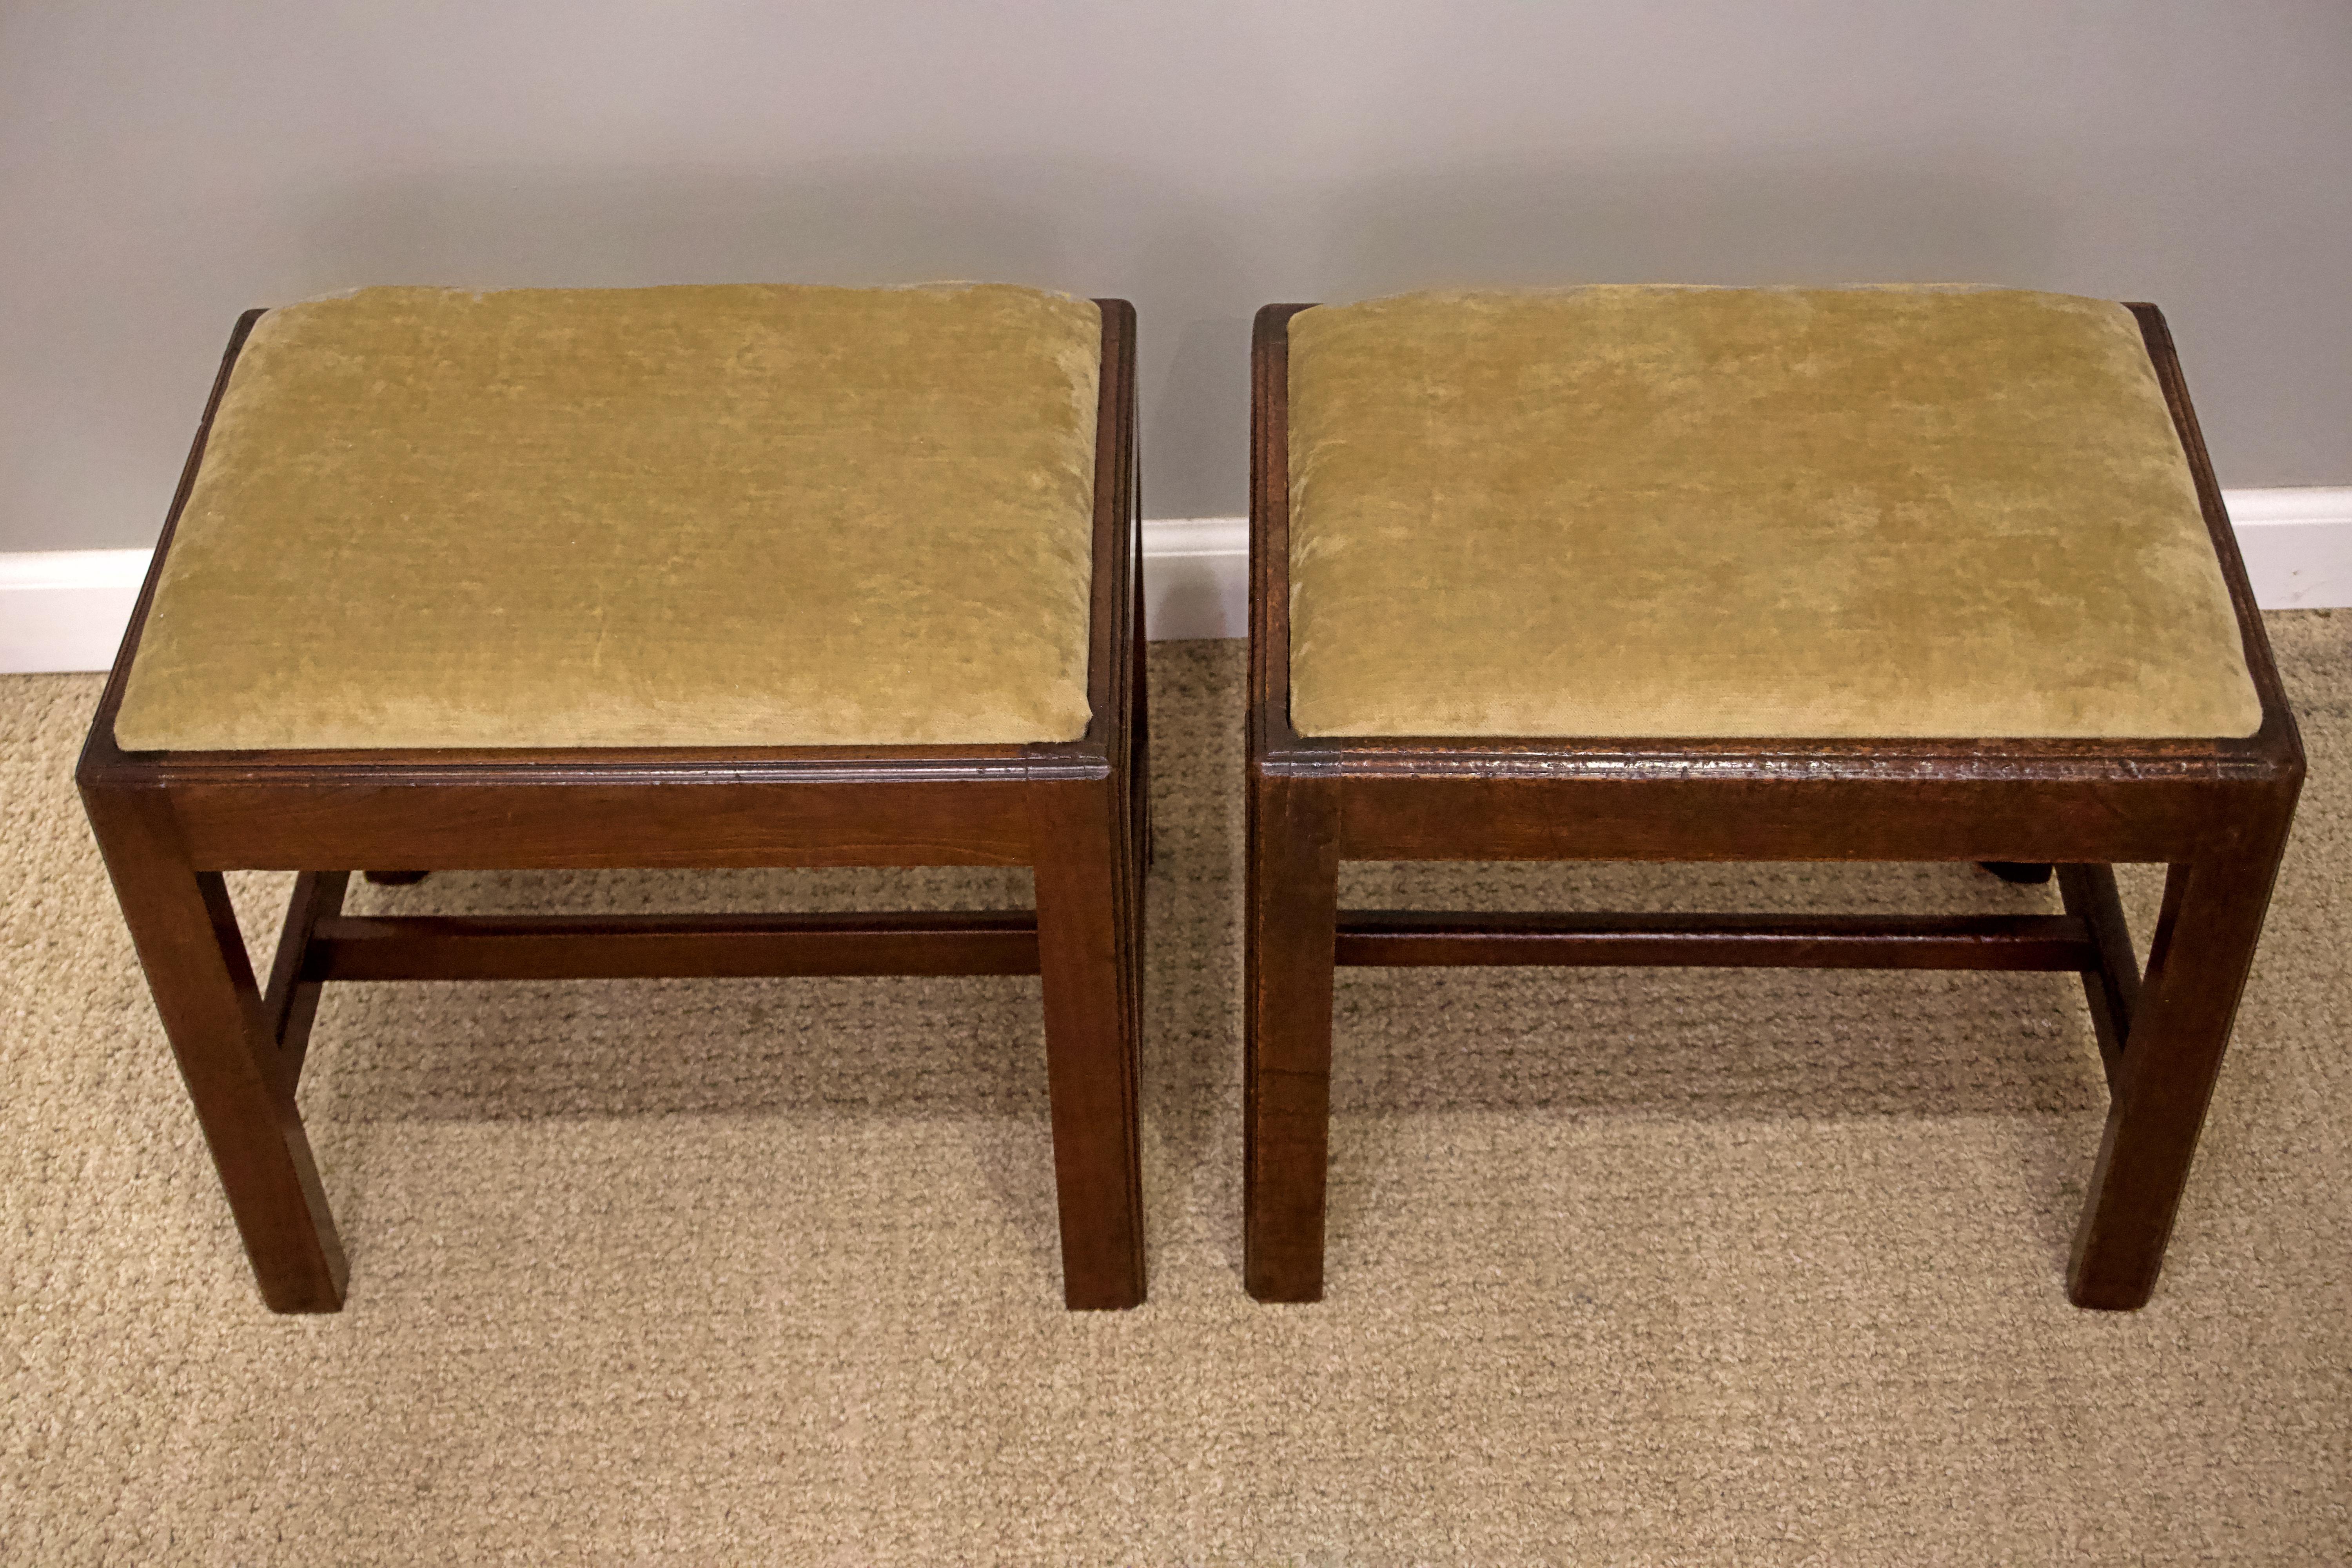 Pair of George III mahogany foot stools, English, circa 1790.